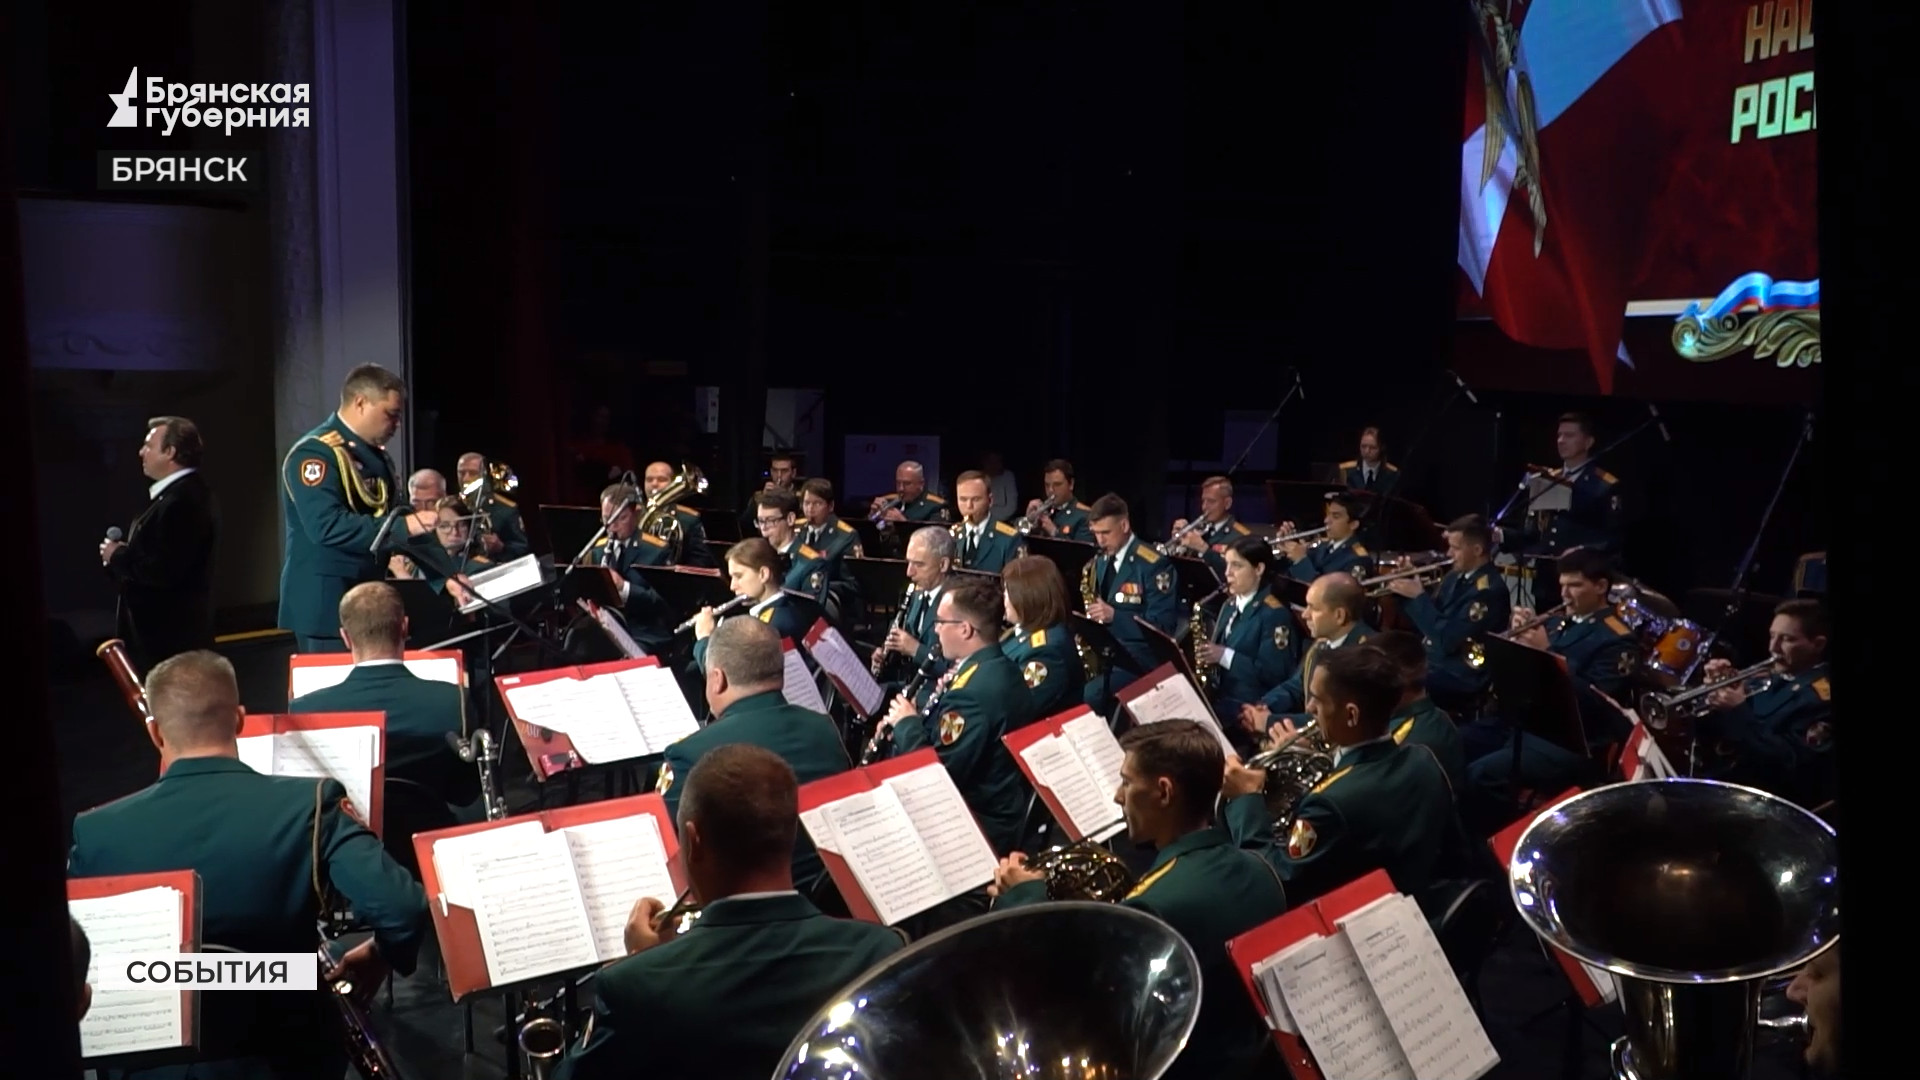 Оркестр войск Росгвардии выступил в Брянске в честь годовщины освобождения от гитлеровцев